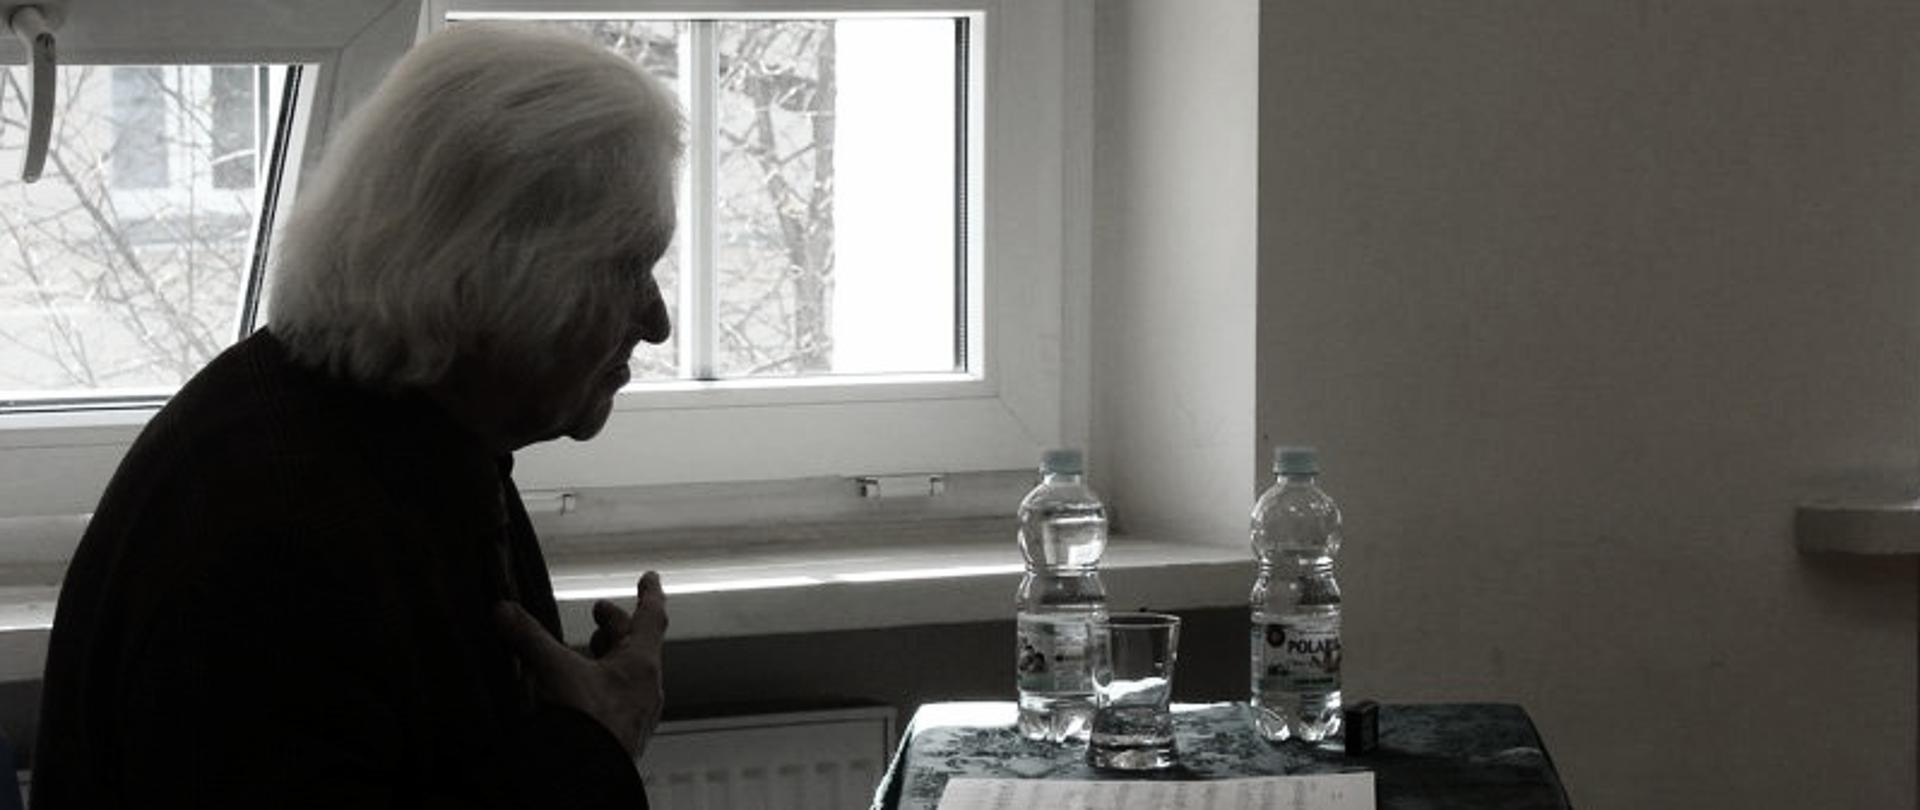 czarno białą fotografia po lewej stronie siwy starszy człowiek siedzący na tle okna